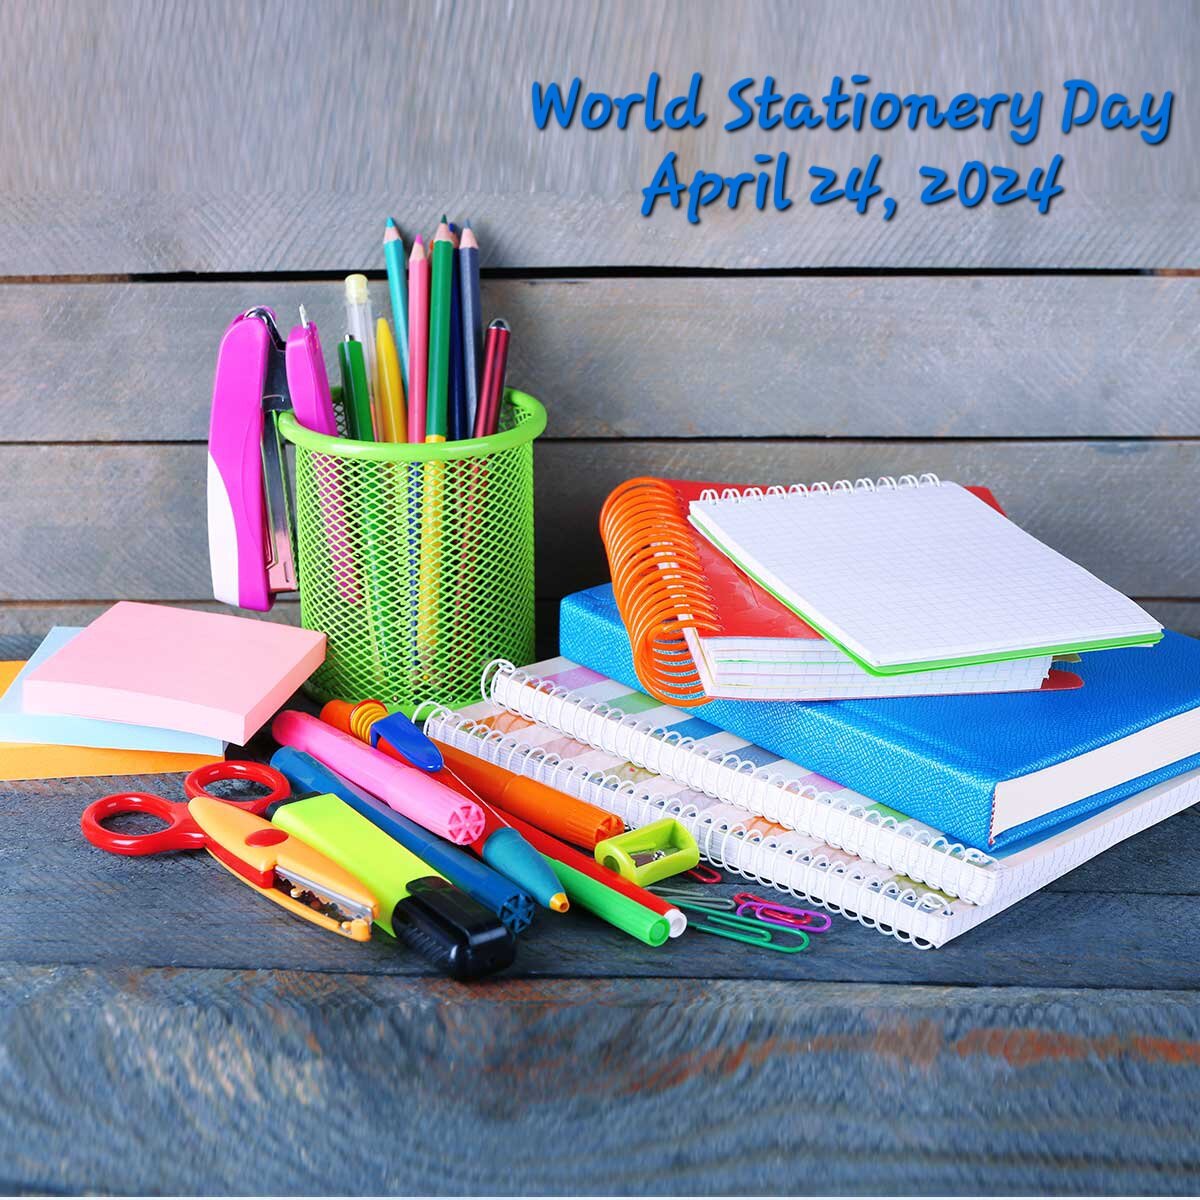 روز جهانی لوازم التحریر ۱۴۰۳ + تاریخچه و پوستر World Stationery Day